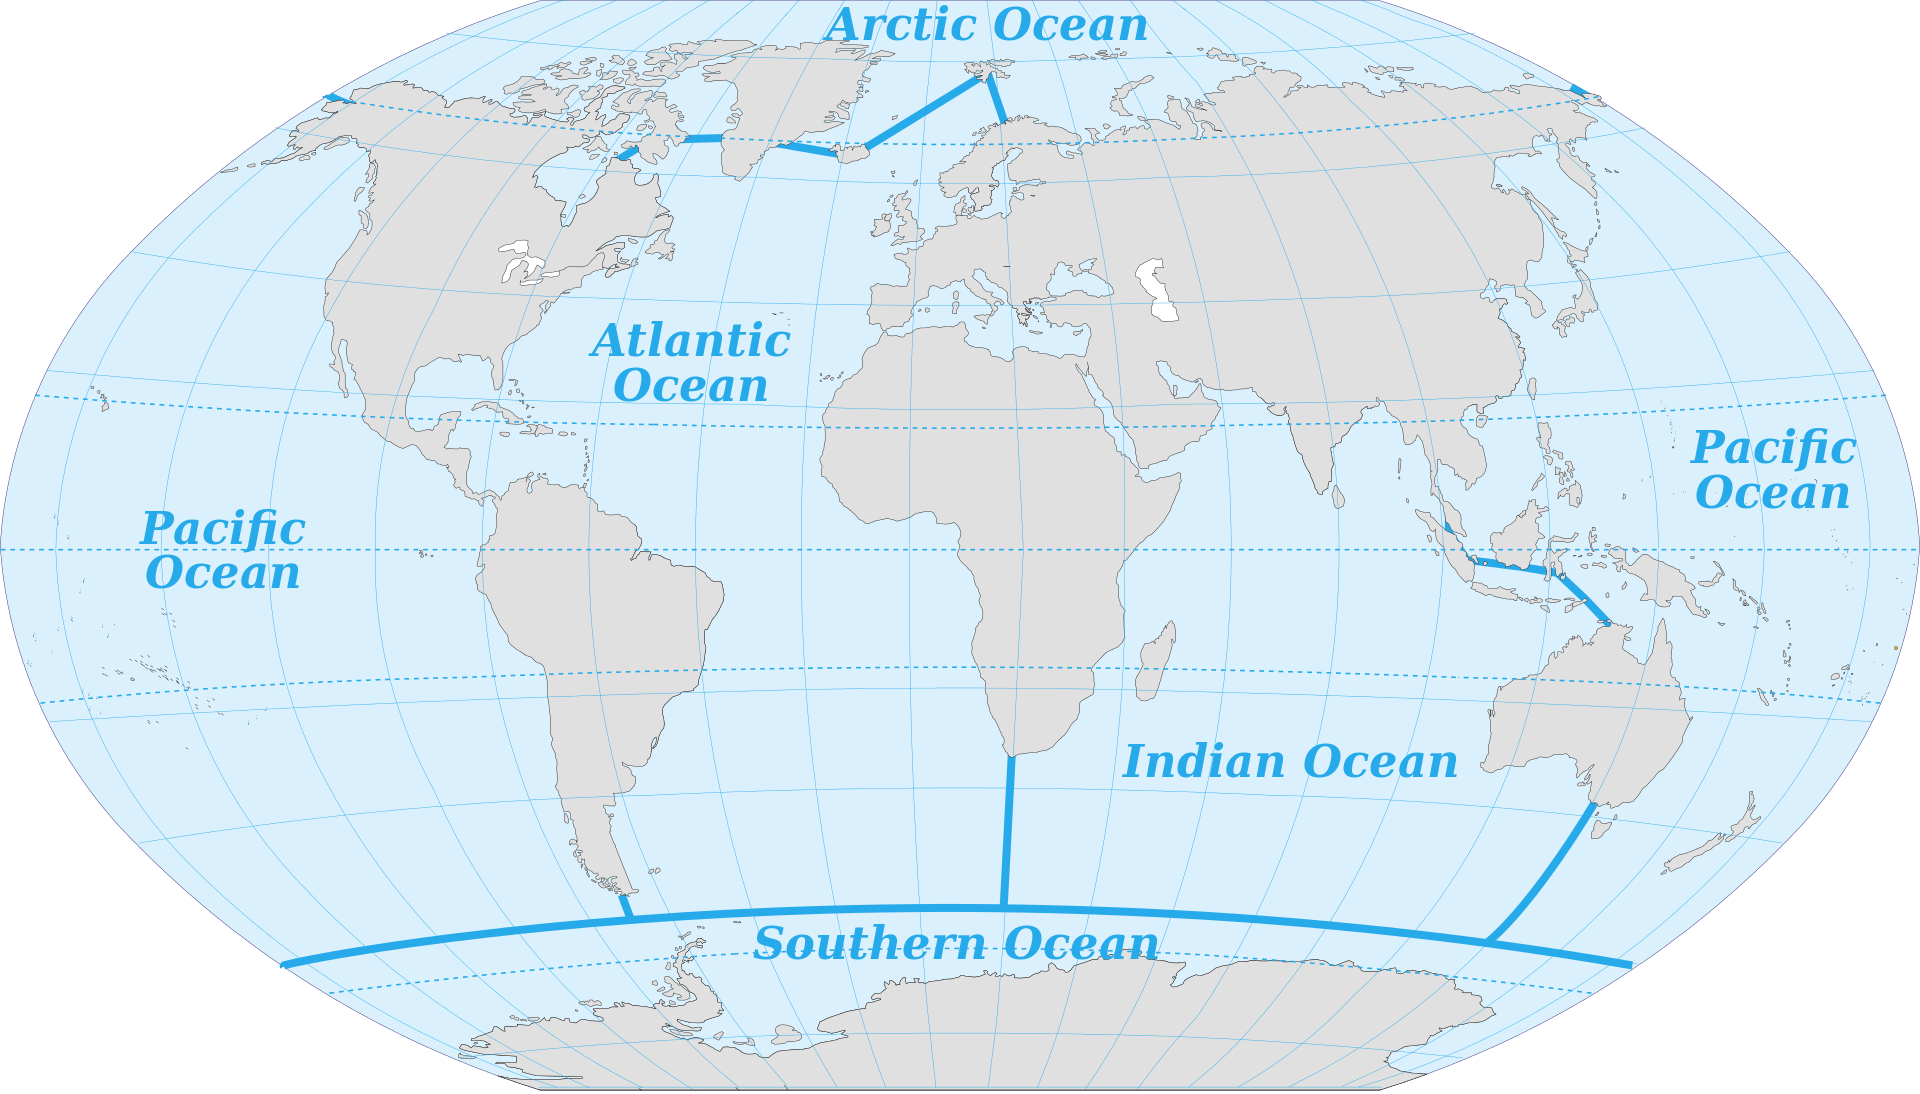 从世界地图上可以看到,地球上的各片海洋看似都是互相连通成一个整体